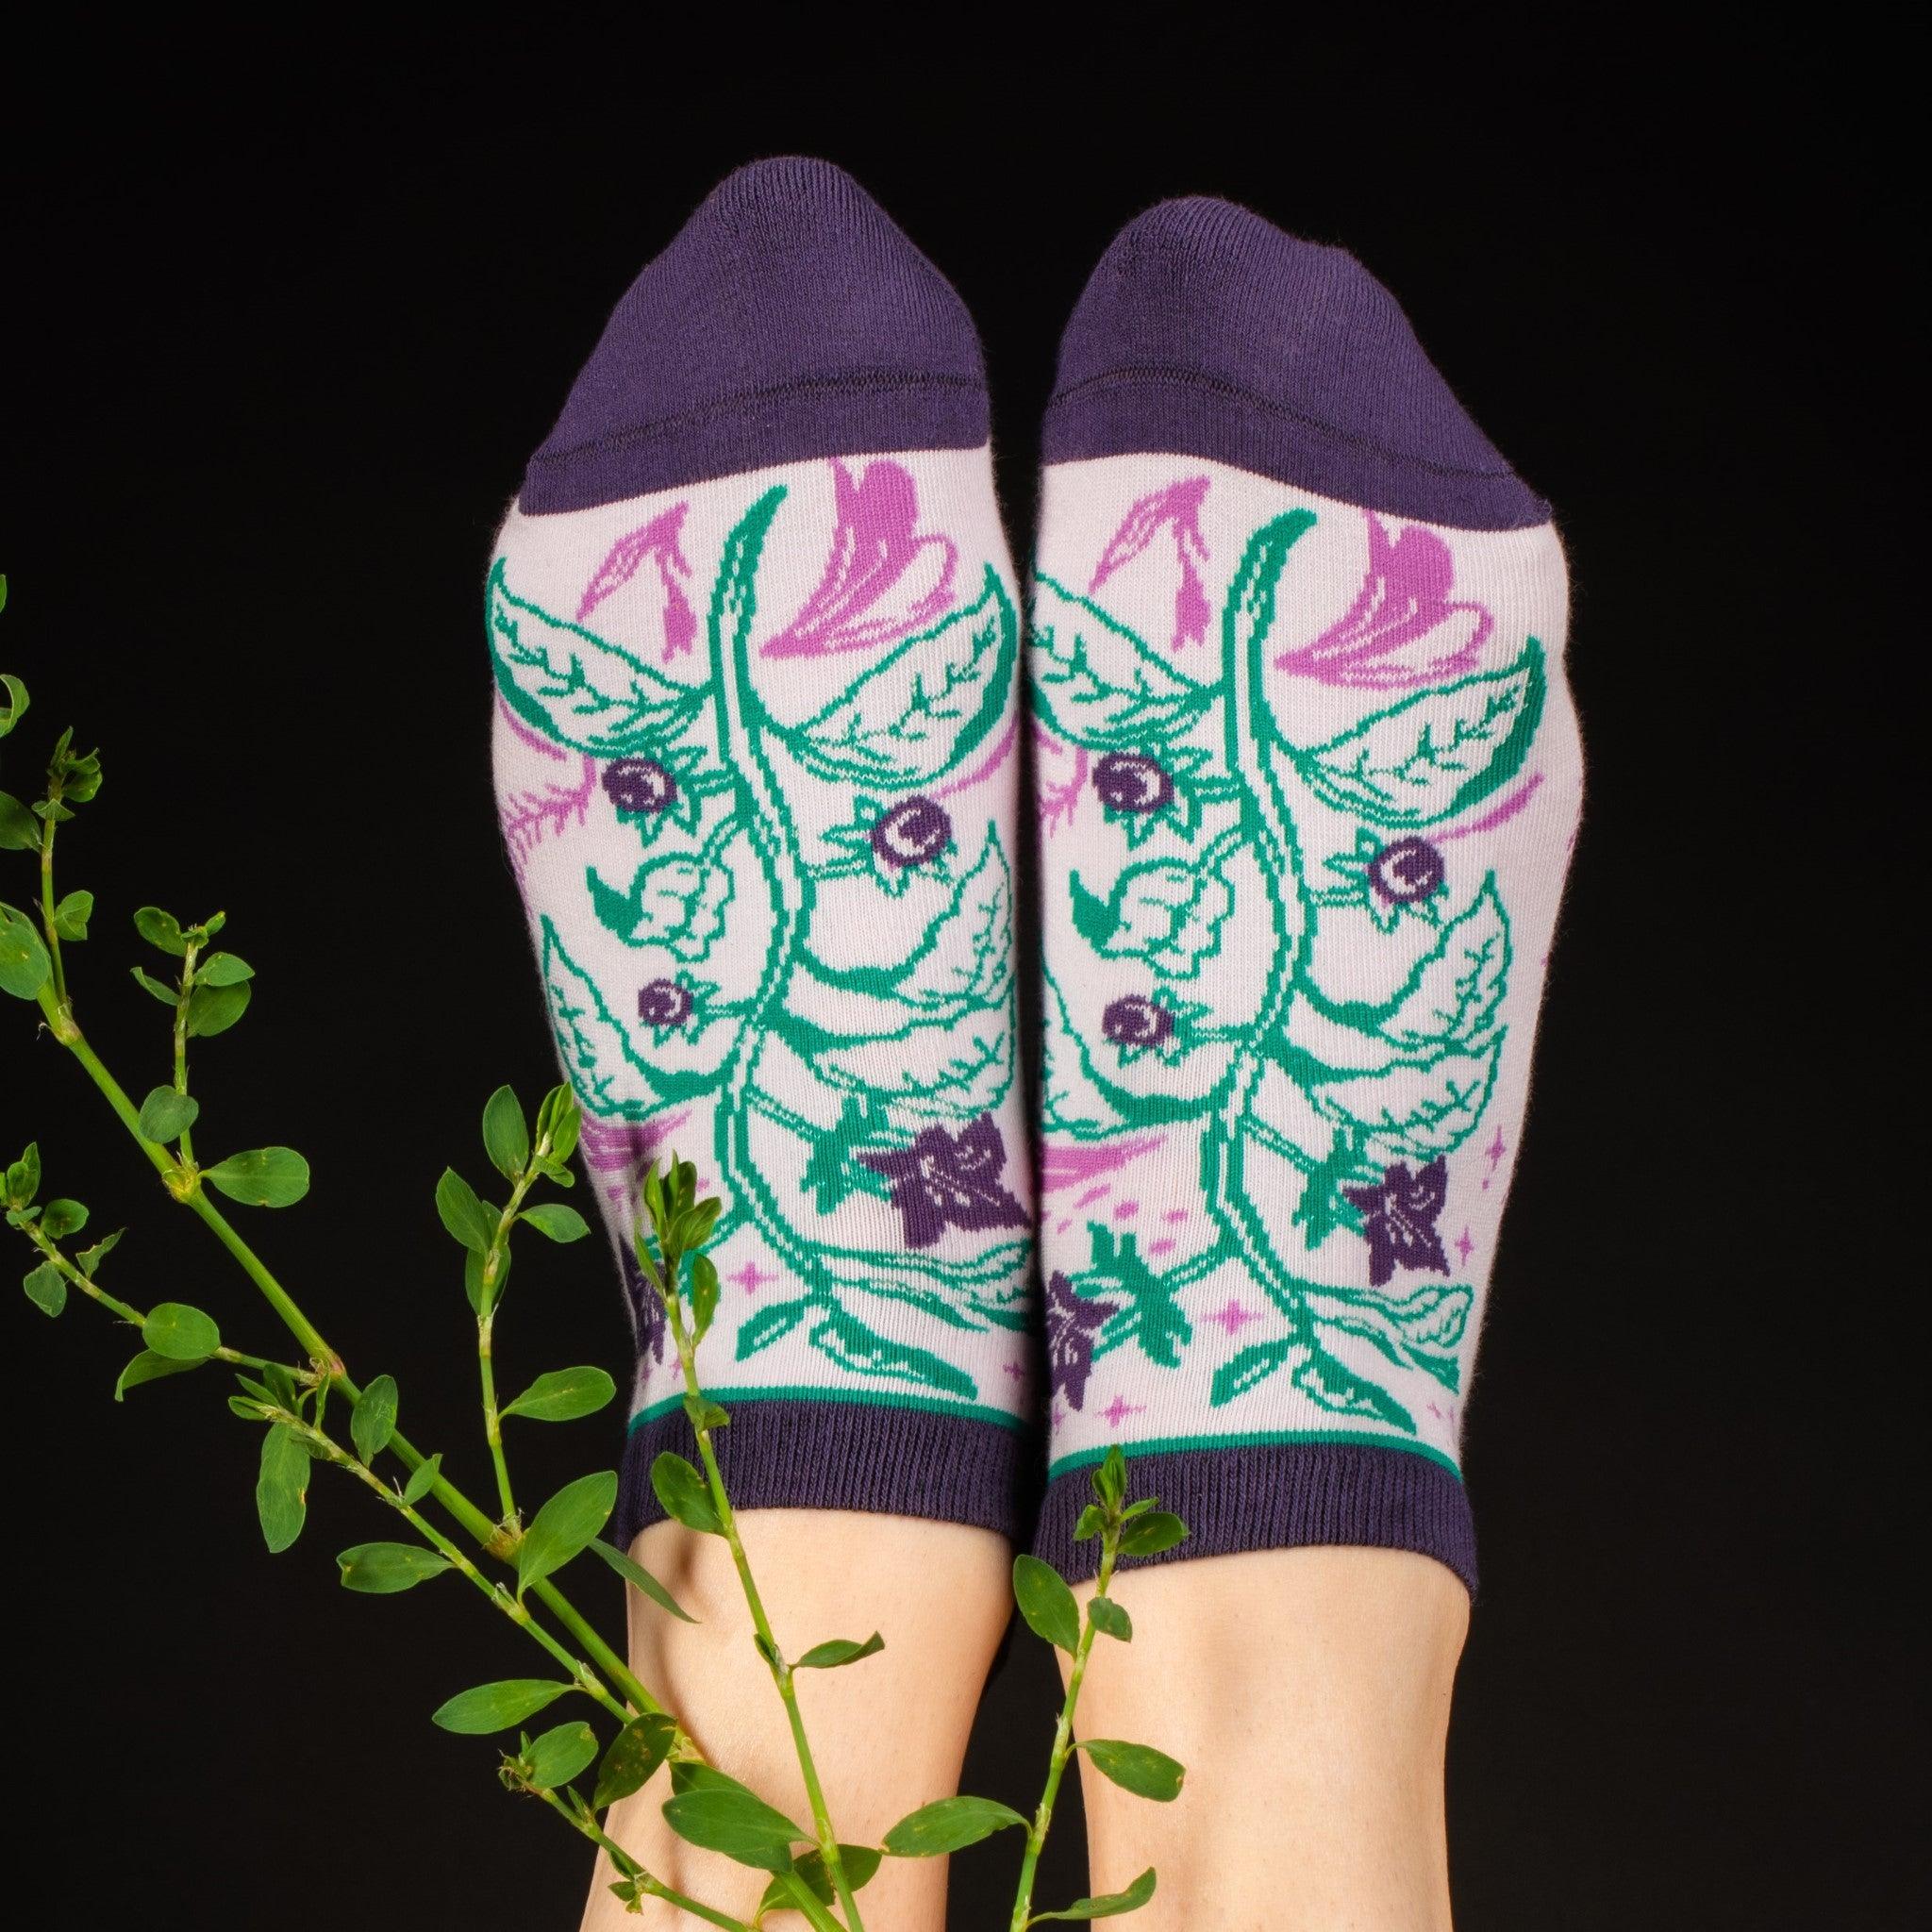 PREORDER Belladonna Deadly Nightshade Ankle Socks - FootClothes